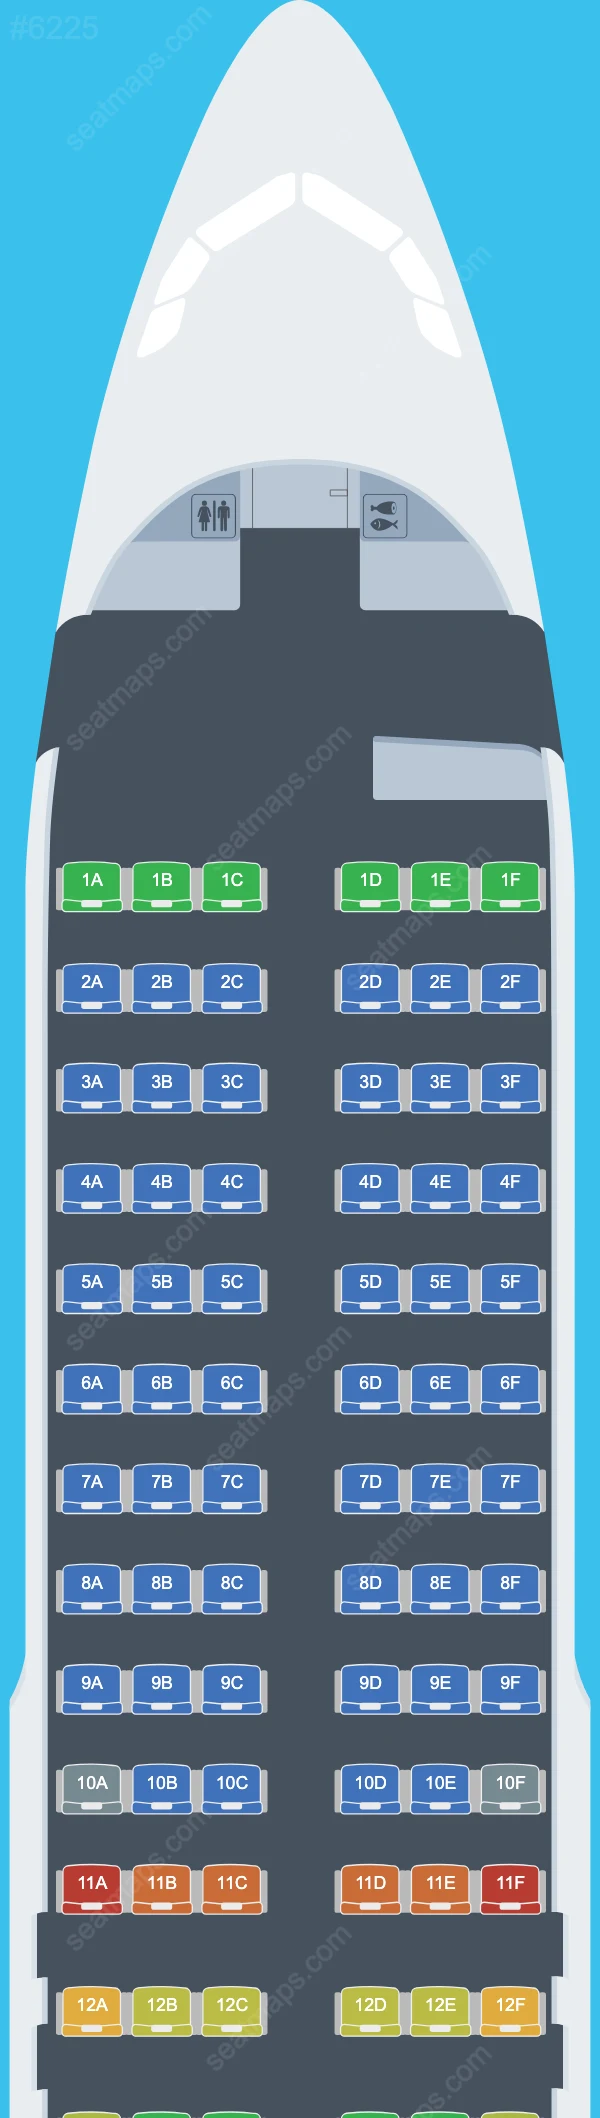 Titan Airways Airbus A320 Seat Maps A320-200 V.1